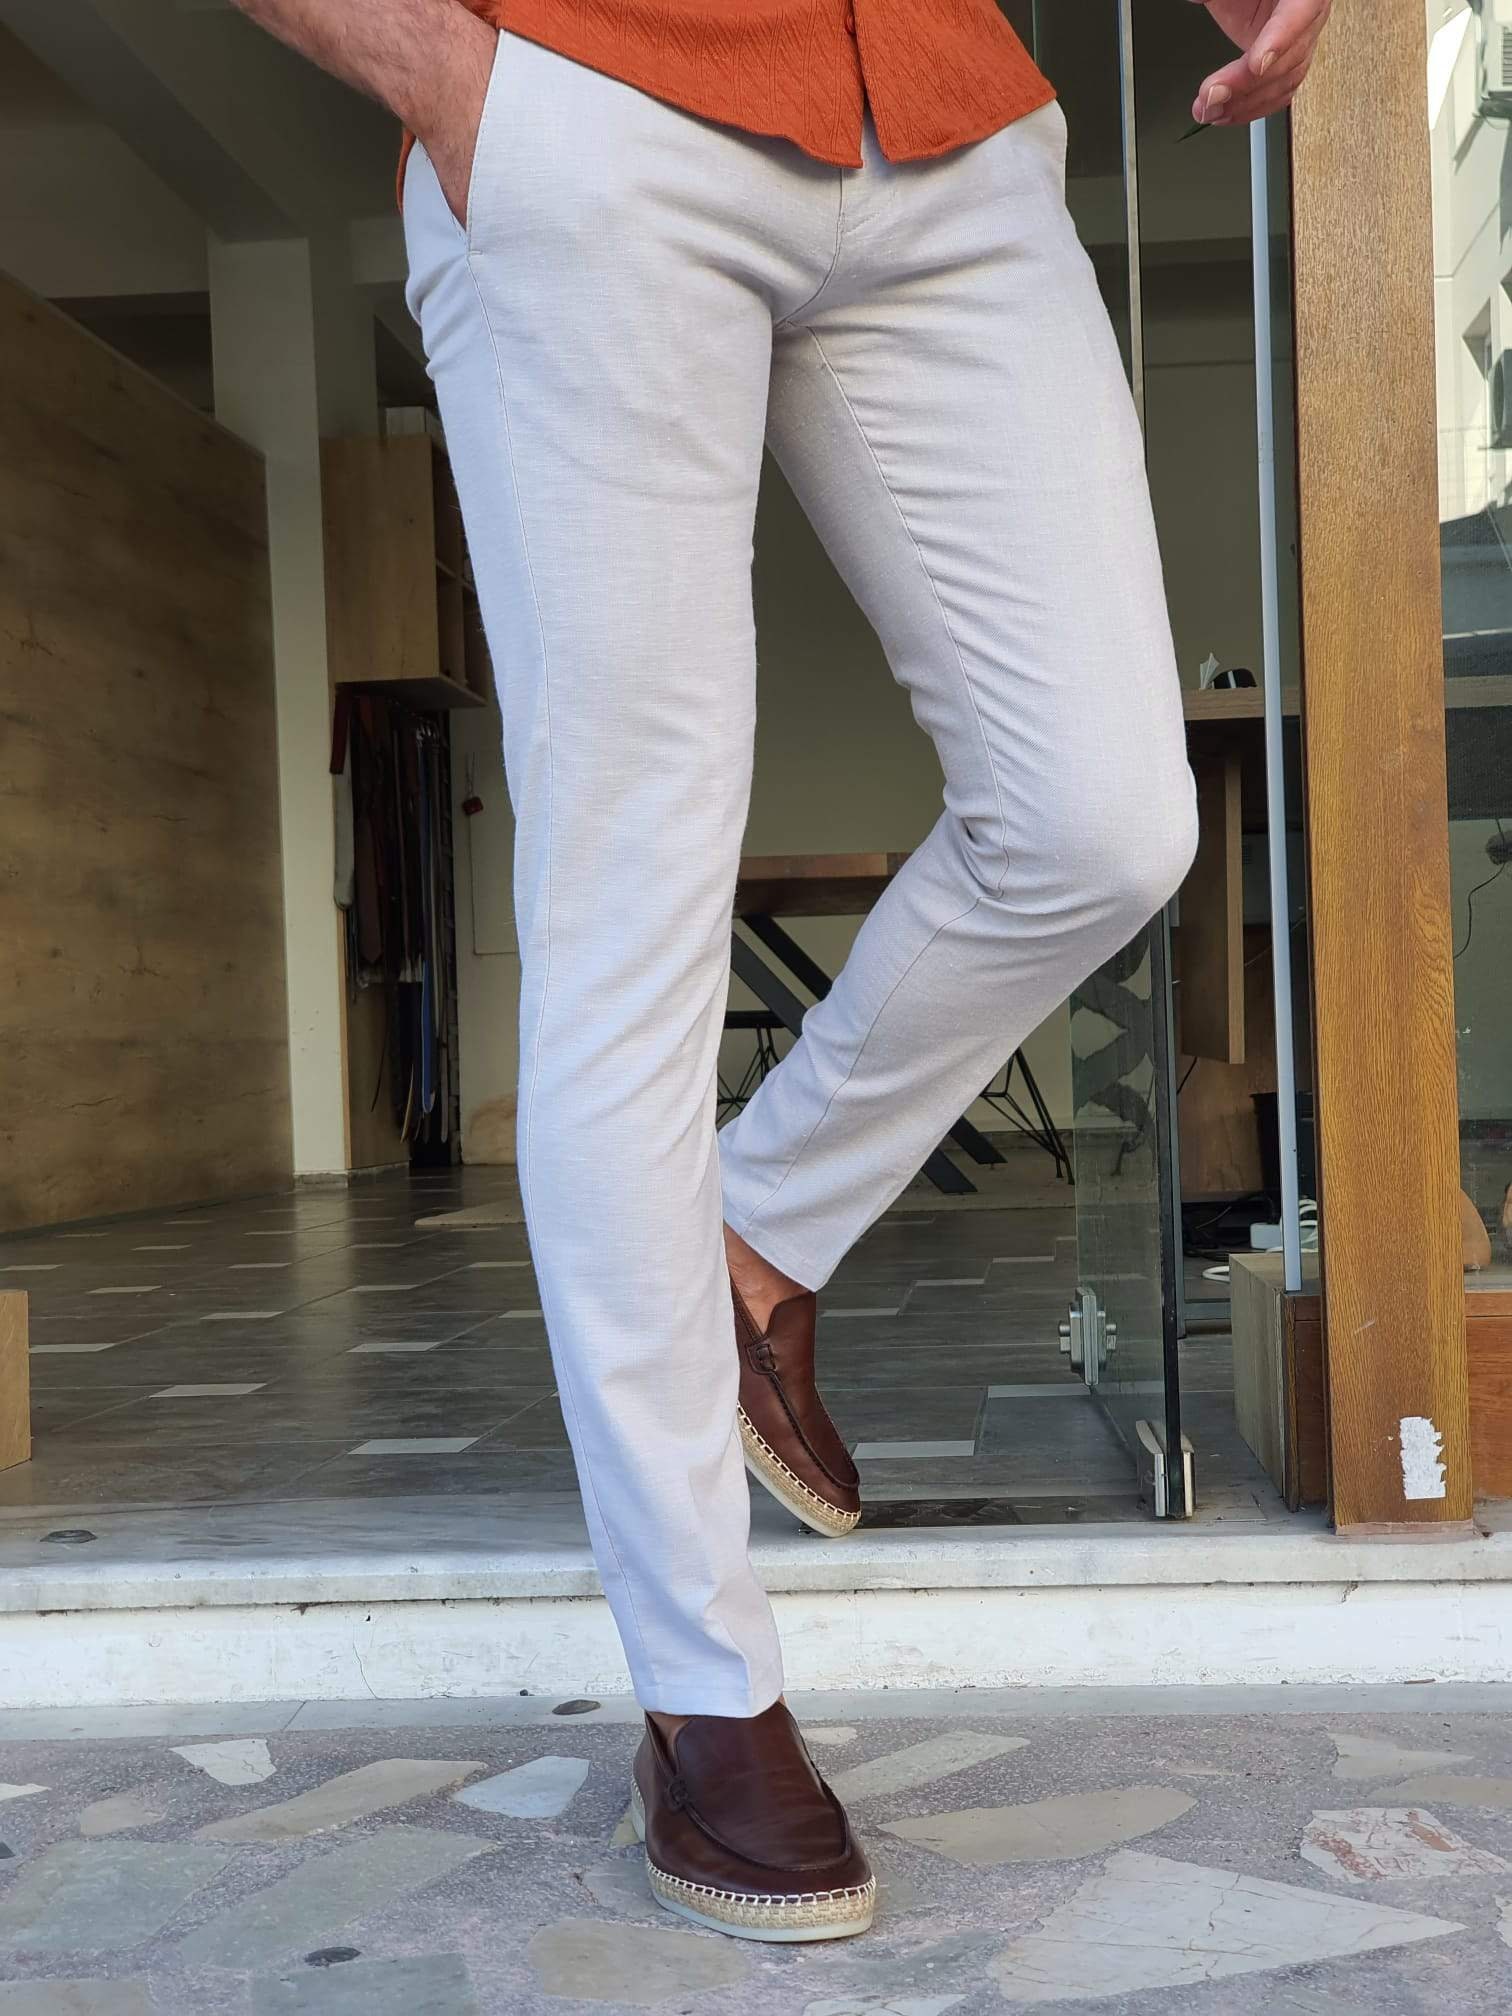 White Cotton Pants for Men Comfortable Pants Slim-fit - Etsy